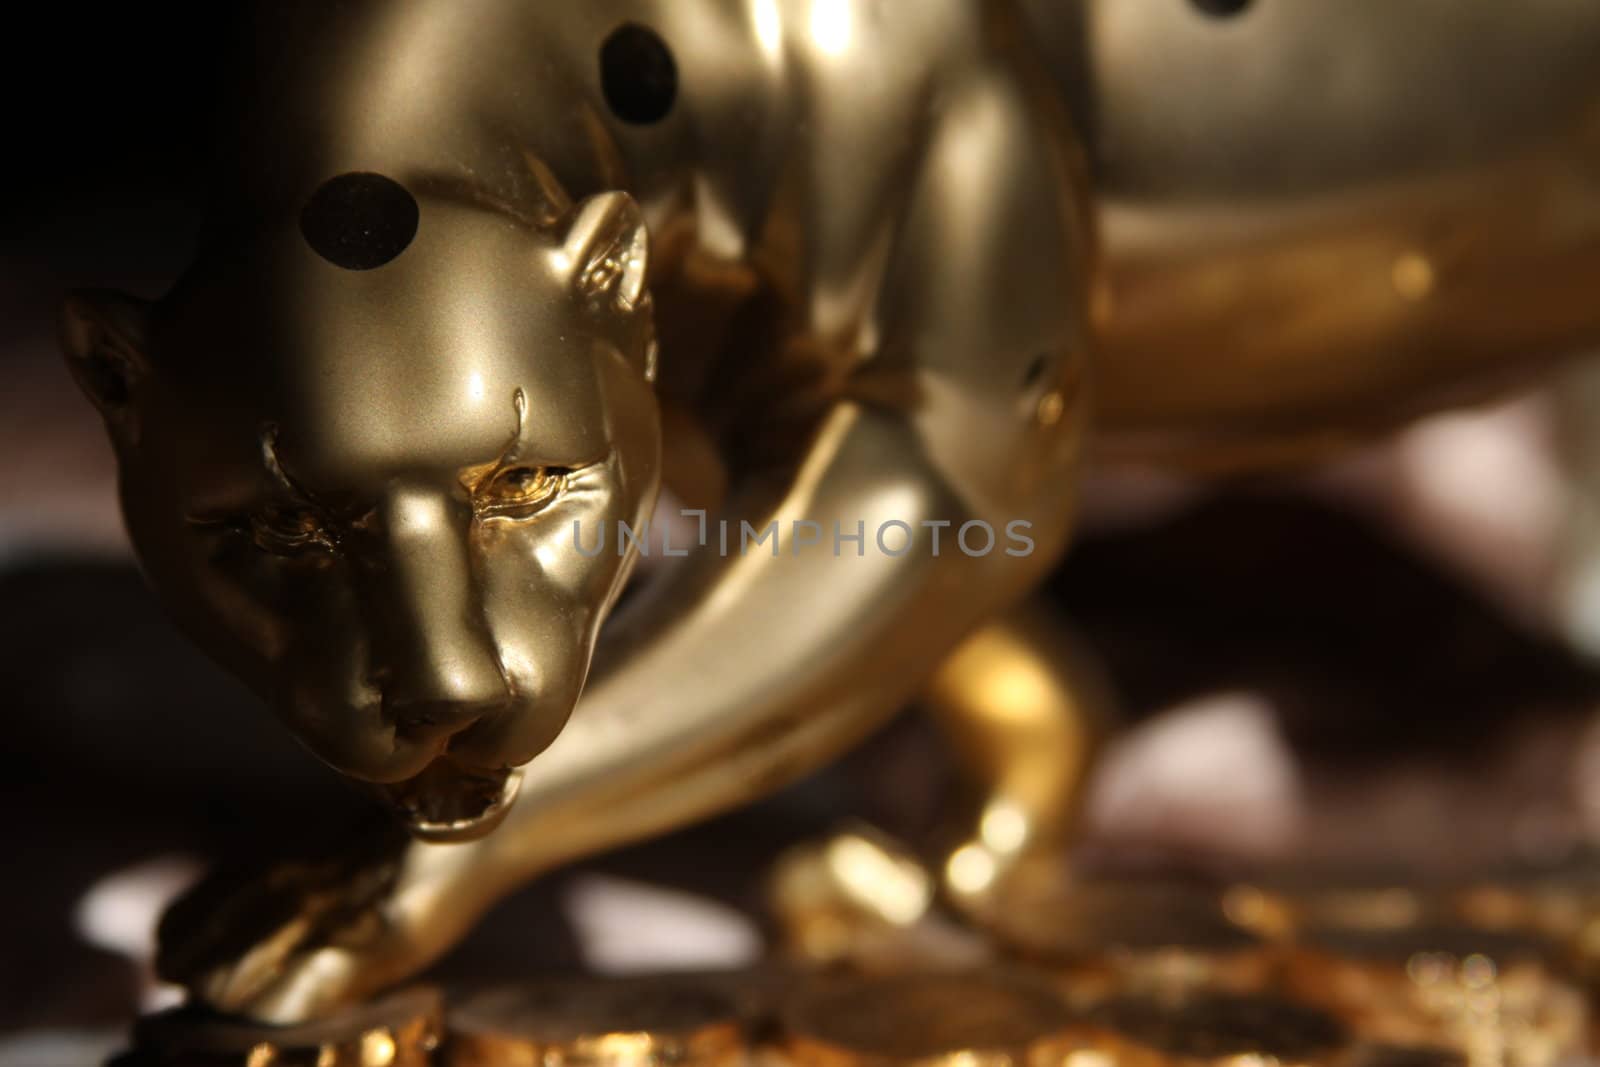 Luxury Golden Jaguar Figurine close up.